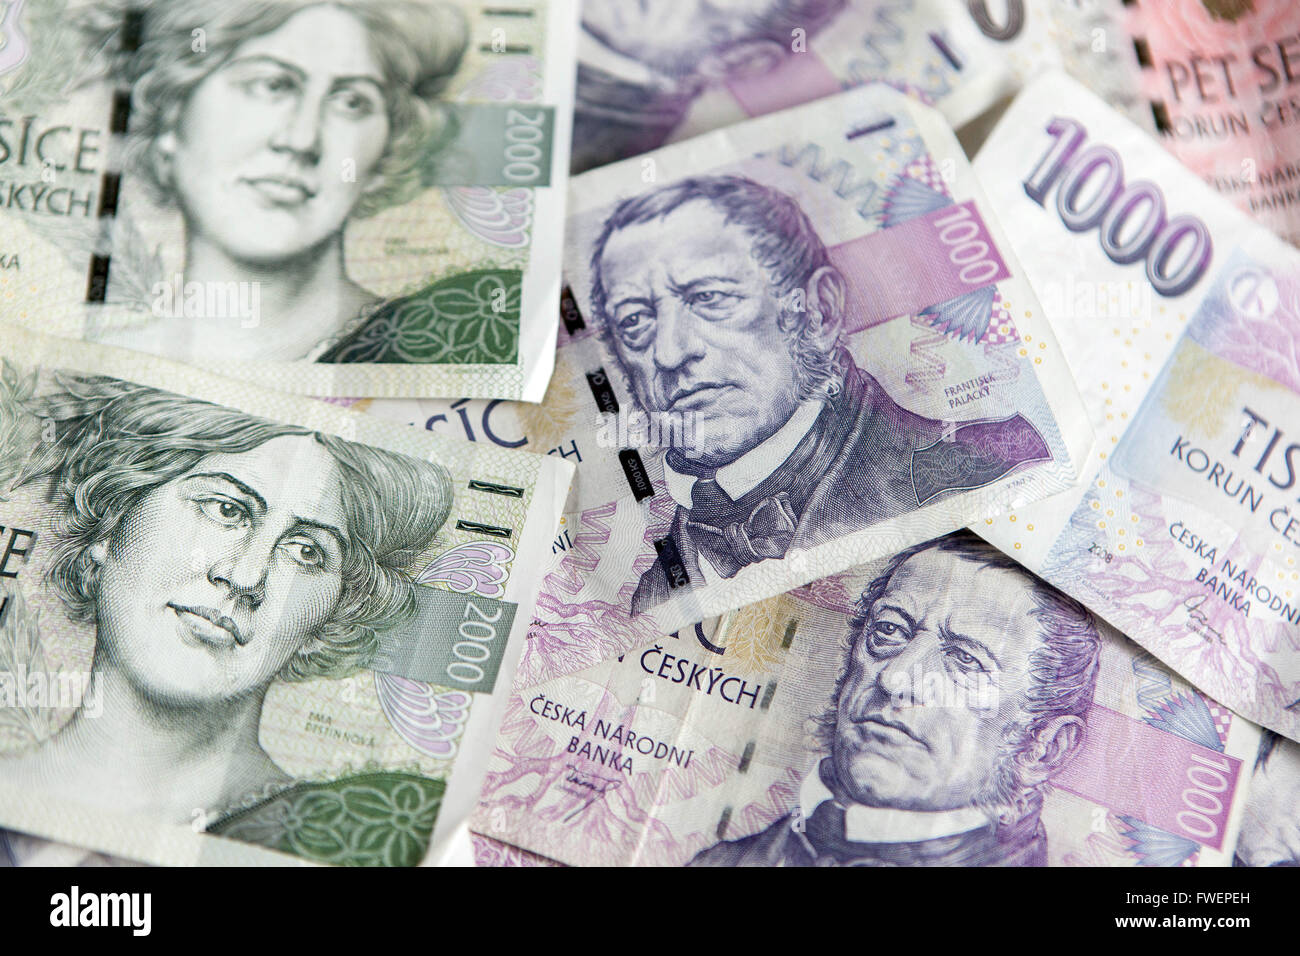 Czech money, Czech banknotes, Czech paper money Stock Photo